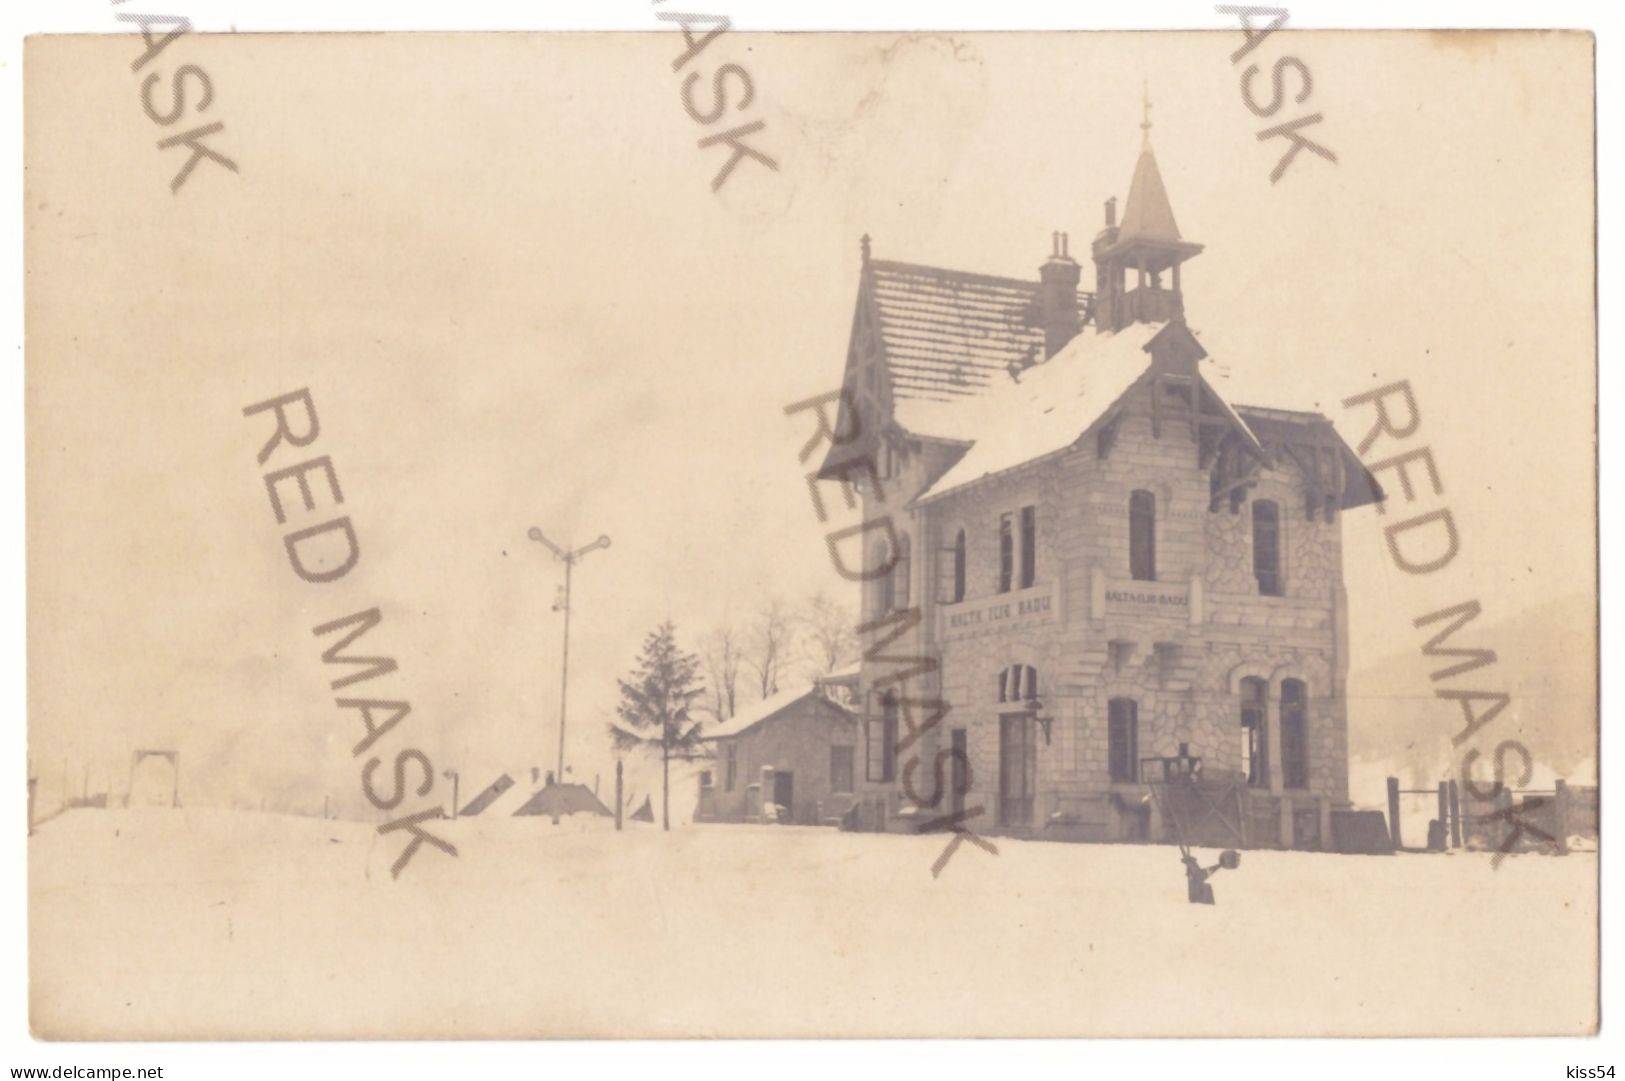 RO 91 - 16783 BRUSTUROASA, Bacau, Gara Elie Radu, Romania - Old Postcard, Real PHOTO - Unused - 1916 - Roumanie